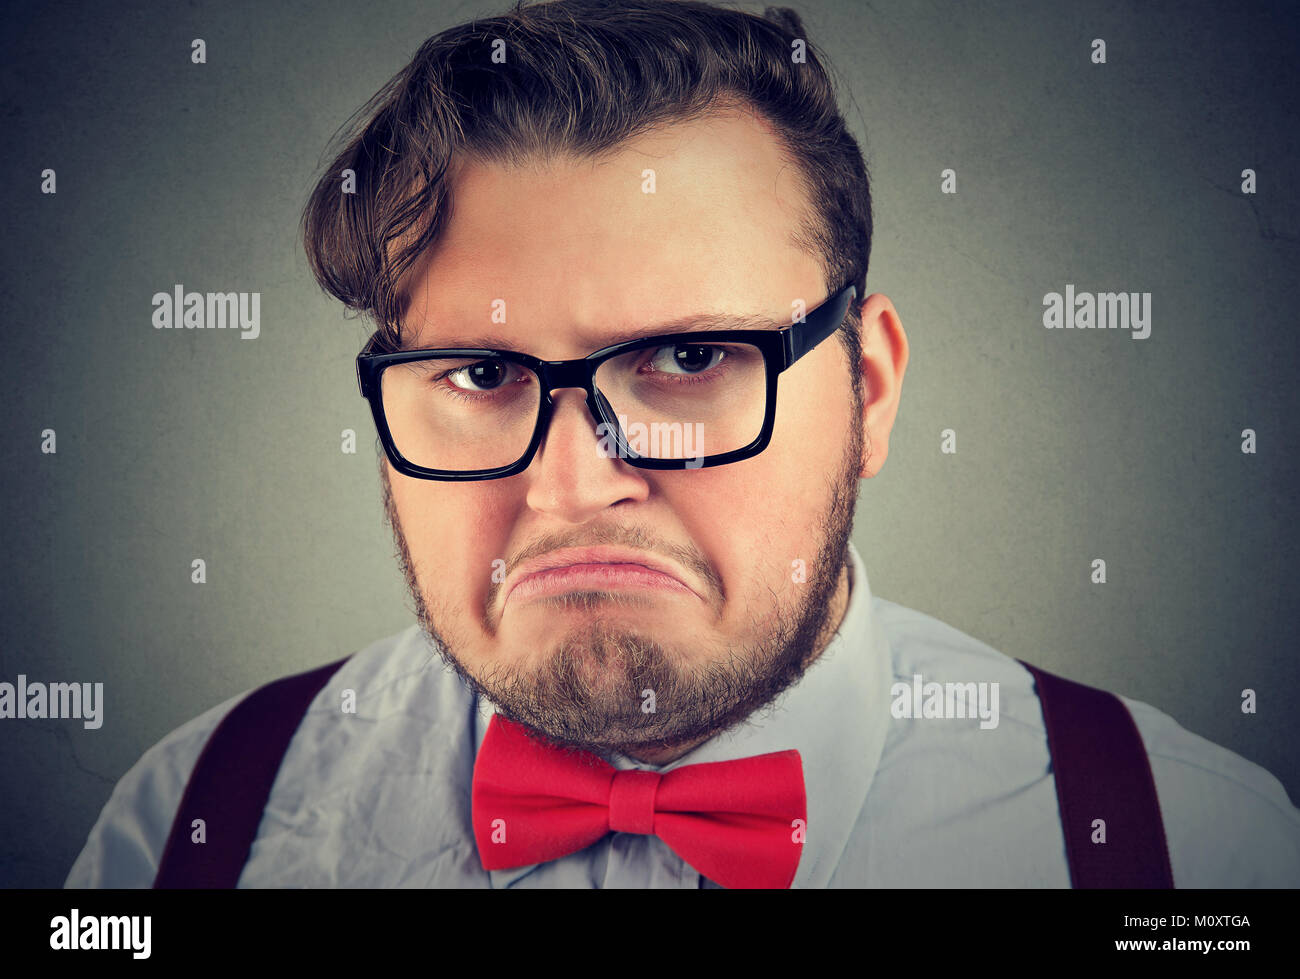 Ritratto di chunky uomo in occhiali cercando offeso e cupo che pongono alla fotocamera. Foto Stock